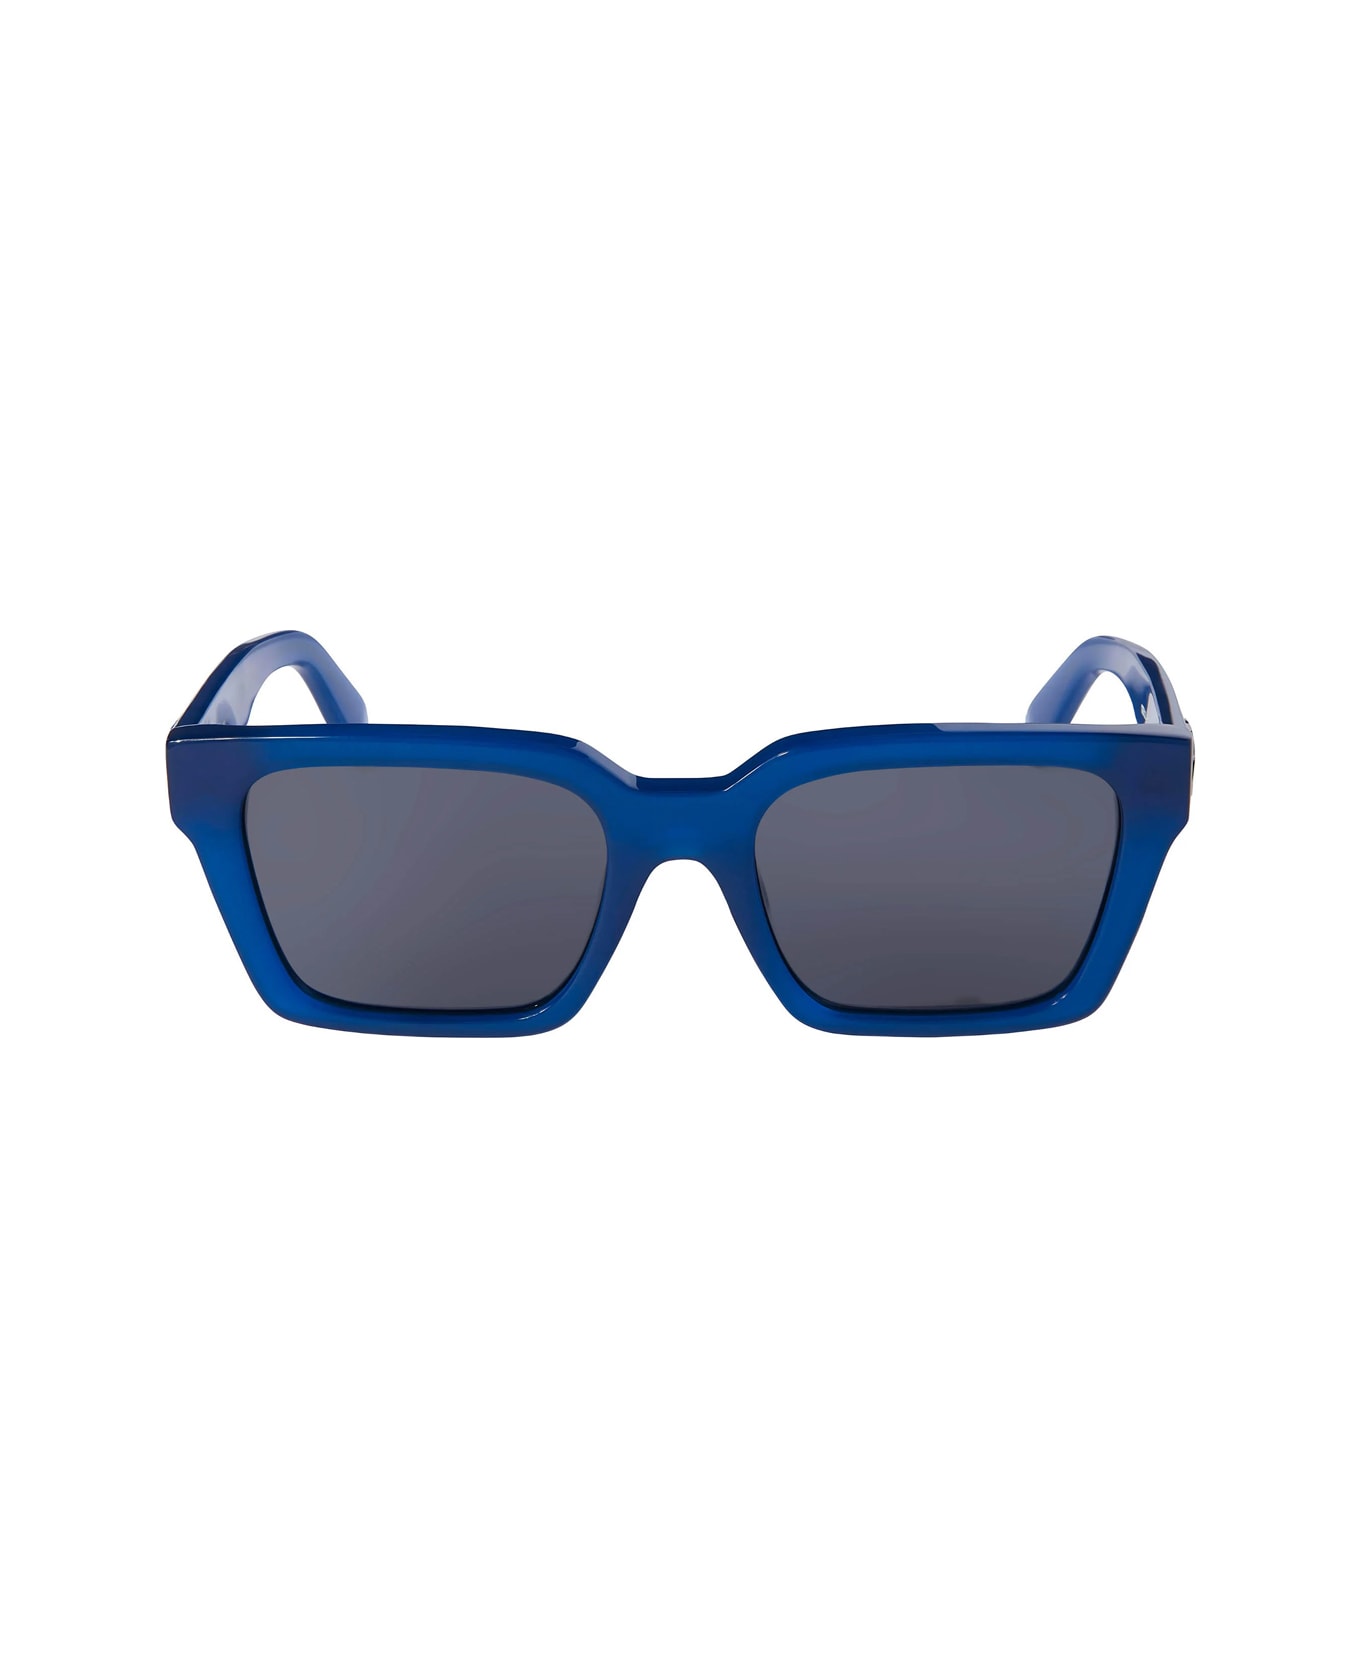 Off-White Oeri111 Branson 4507 Blue sunglasses Cult - Blu